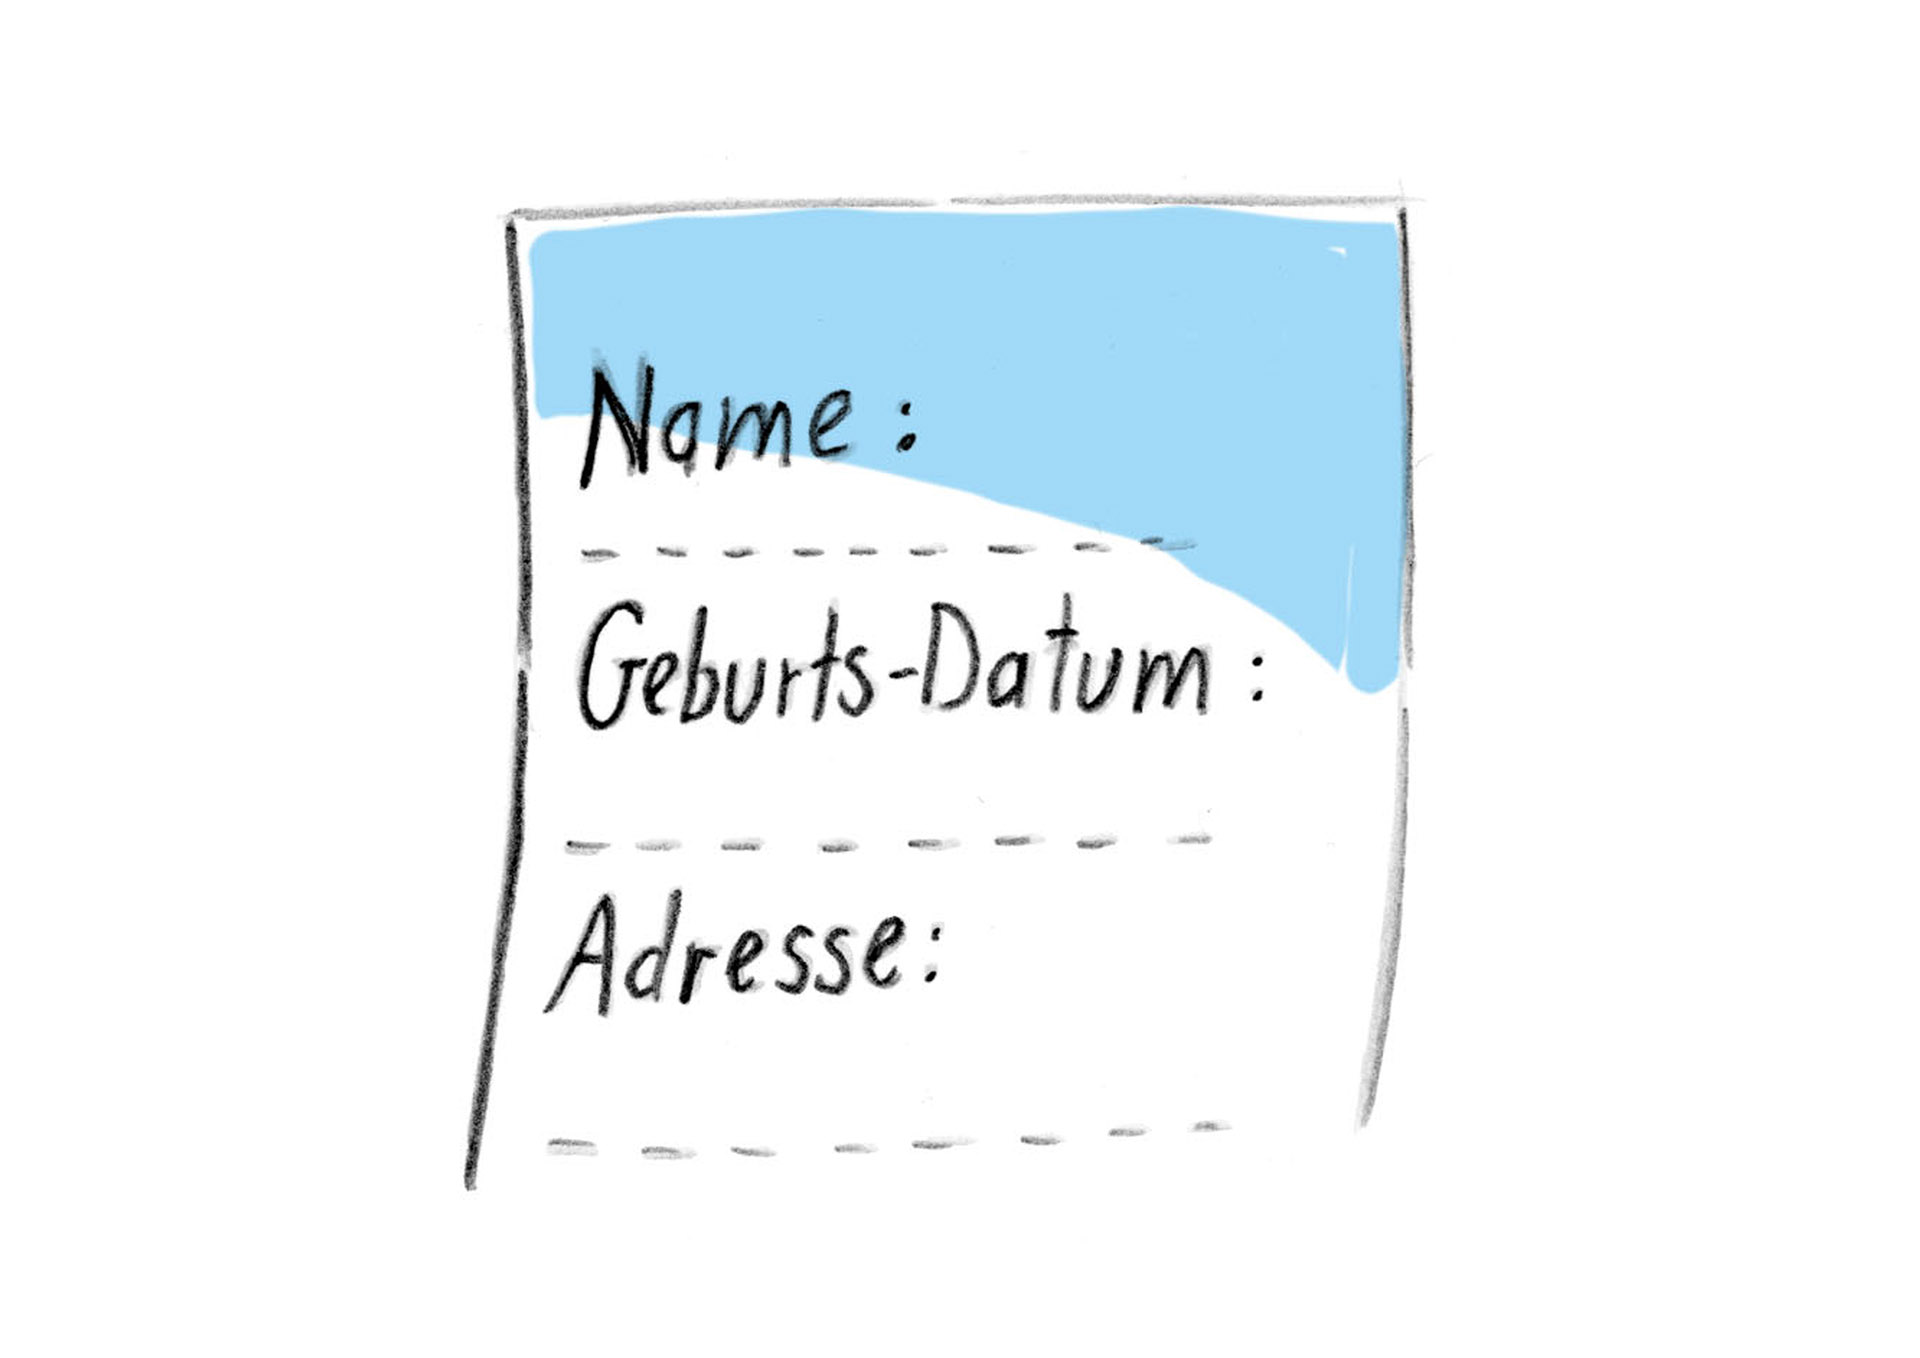 Bild: Ein Formular mit Namen, Geburts-Datum und Adresse